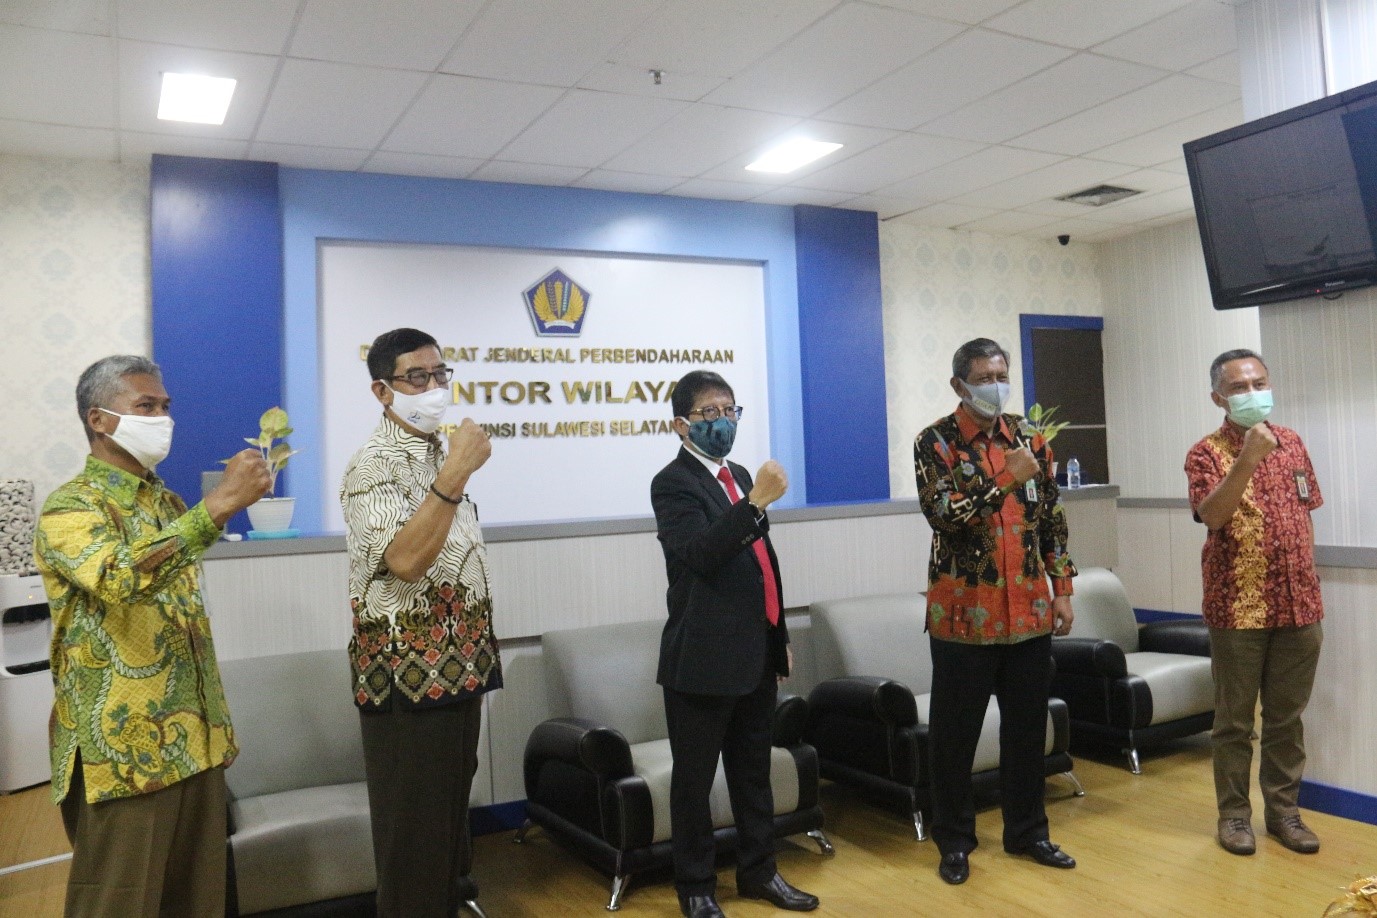 Percepat Pemulihan Ekonomi, Perwakilan Kementerian Keuangan Koordinasi Dengan Perwakilan Bank Indonesia